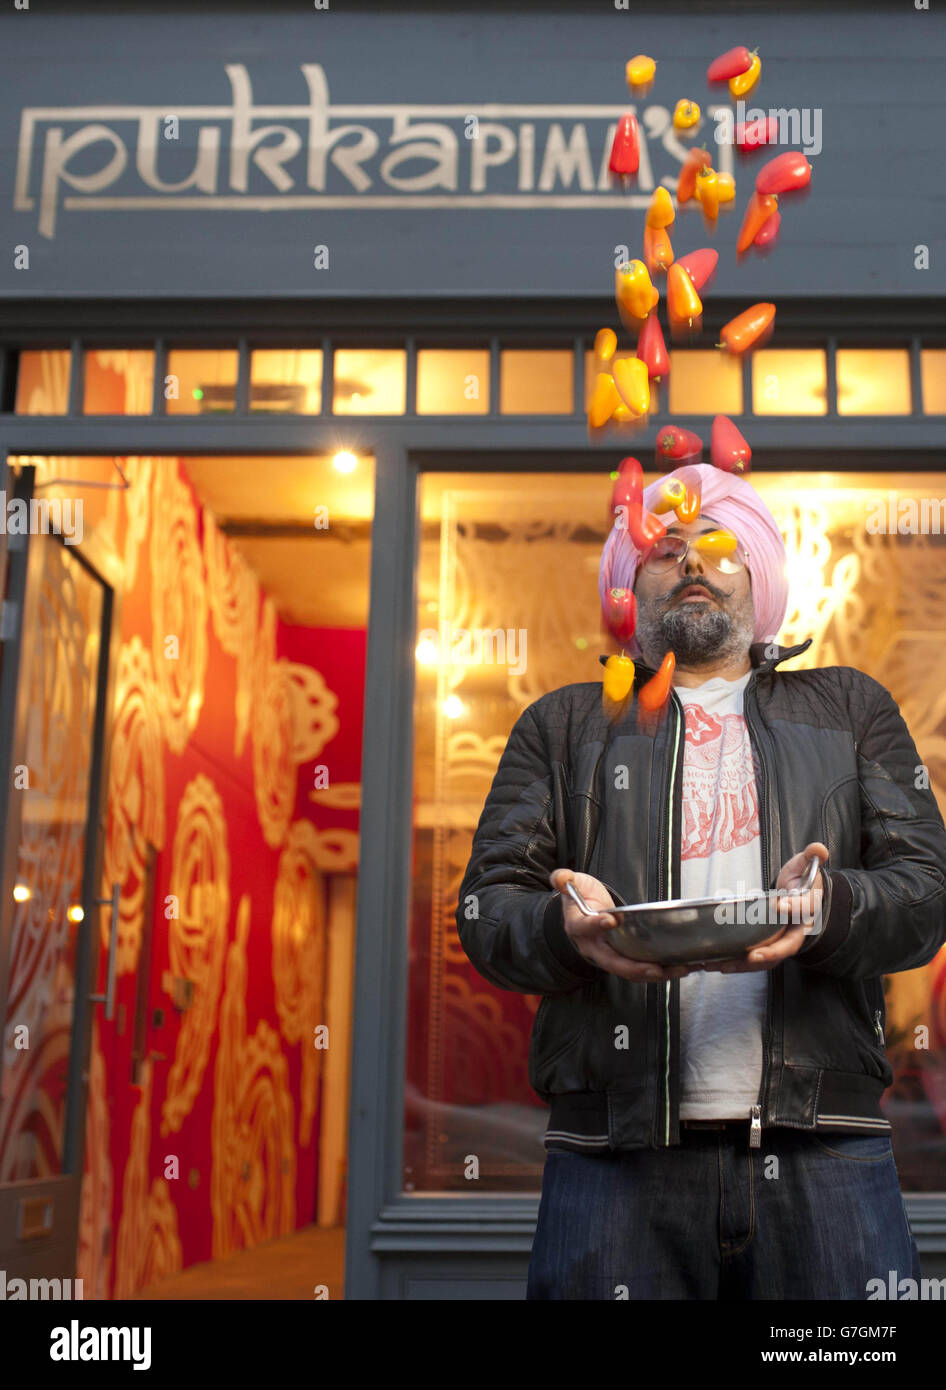 Der anglo-indische Koch und Komiker Hardeep Singh Kohli im Pop-up-Restaurant des Pukka Pimm an der Bethnal Green Road 133 im Osten Londons. DRÜCKEN SIE VERBANDSFOTO. Bilddatum: Donnerstag, 4. Dezember 2014. Laut Pimm's ist das größte Geheimnis für die Liebhaber von einem eigenen Haus im ganzen Land ein erfrischendes Glas Pimm's, das ihn zum perfekten Begleiter für ein indisches, indisches, indisches, indisches, indisches, indisches. Am Samstag, 6. Dezember 2014, von 12:00 Uhr bis 18:00 Uhr für die Öffentlichkeit geöffnet. Bildnachweis sollte lauten: David Parry/PA Wire Stockfoto